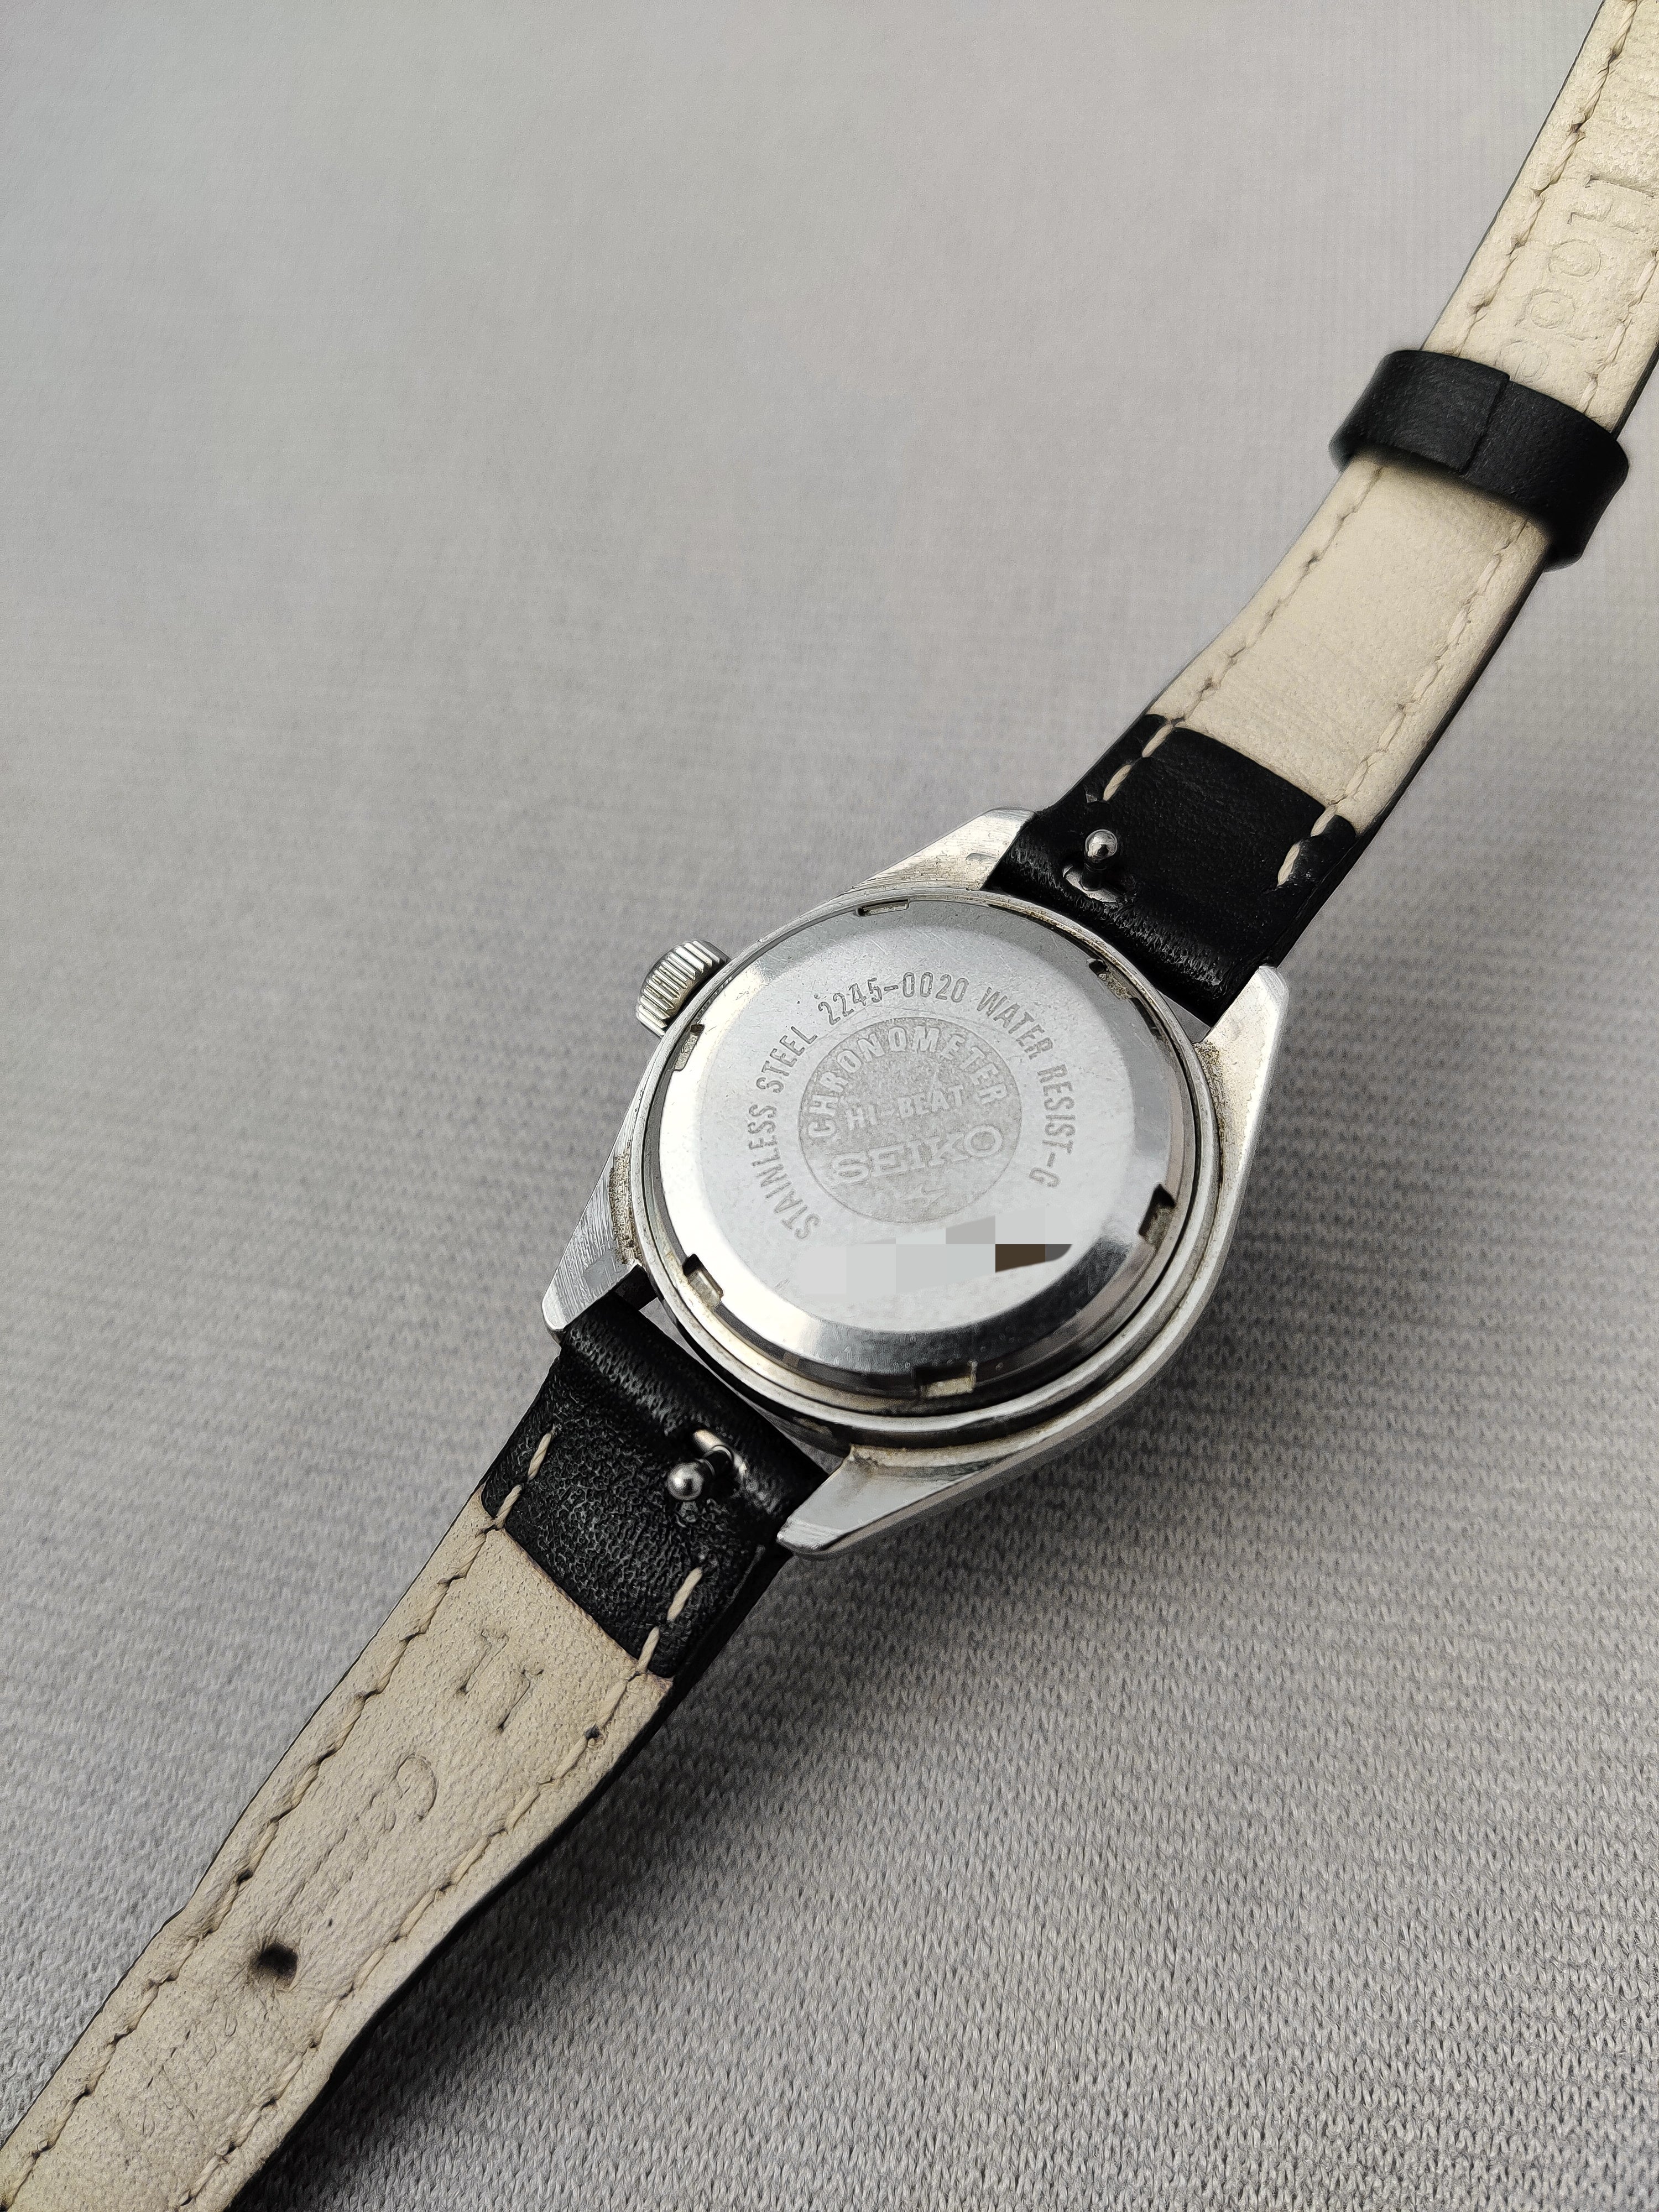 Seiko Chronometer 2245-0020 from 1972